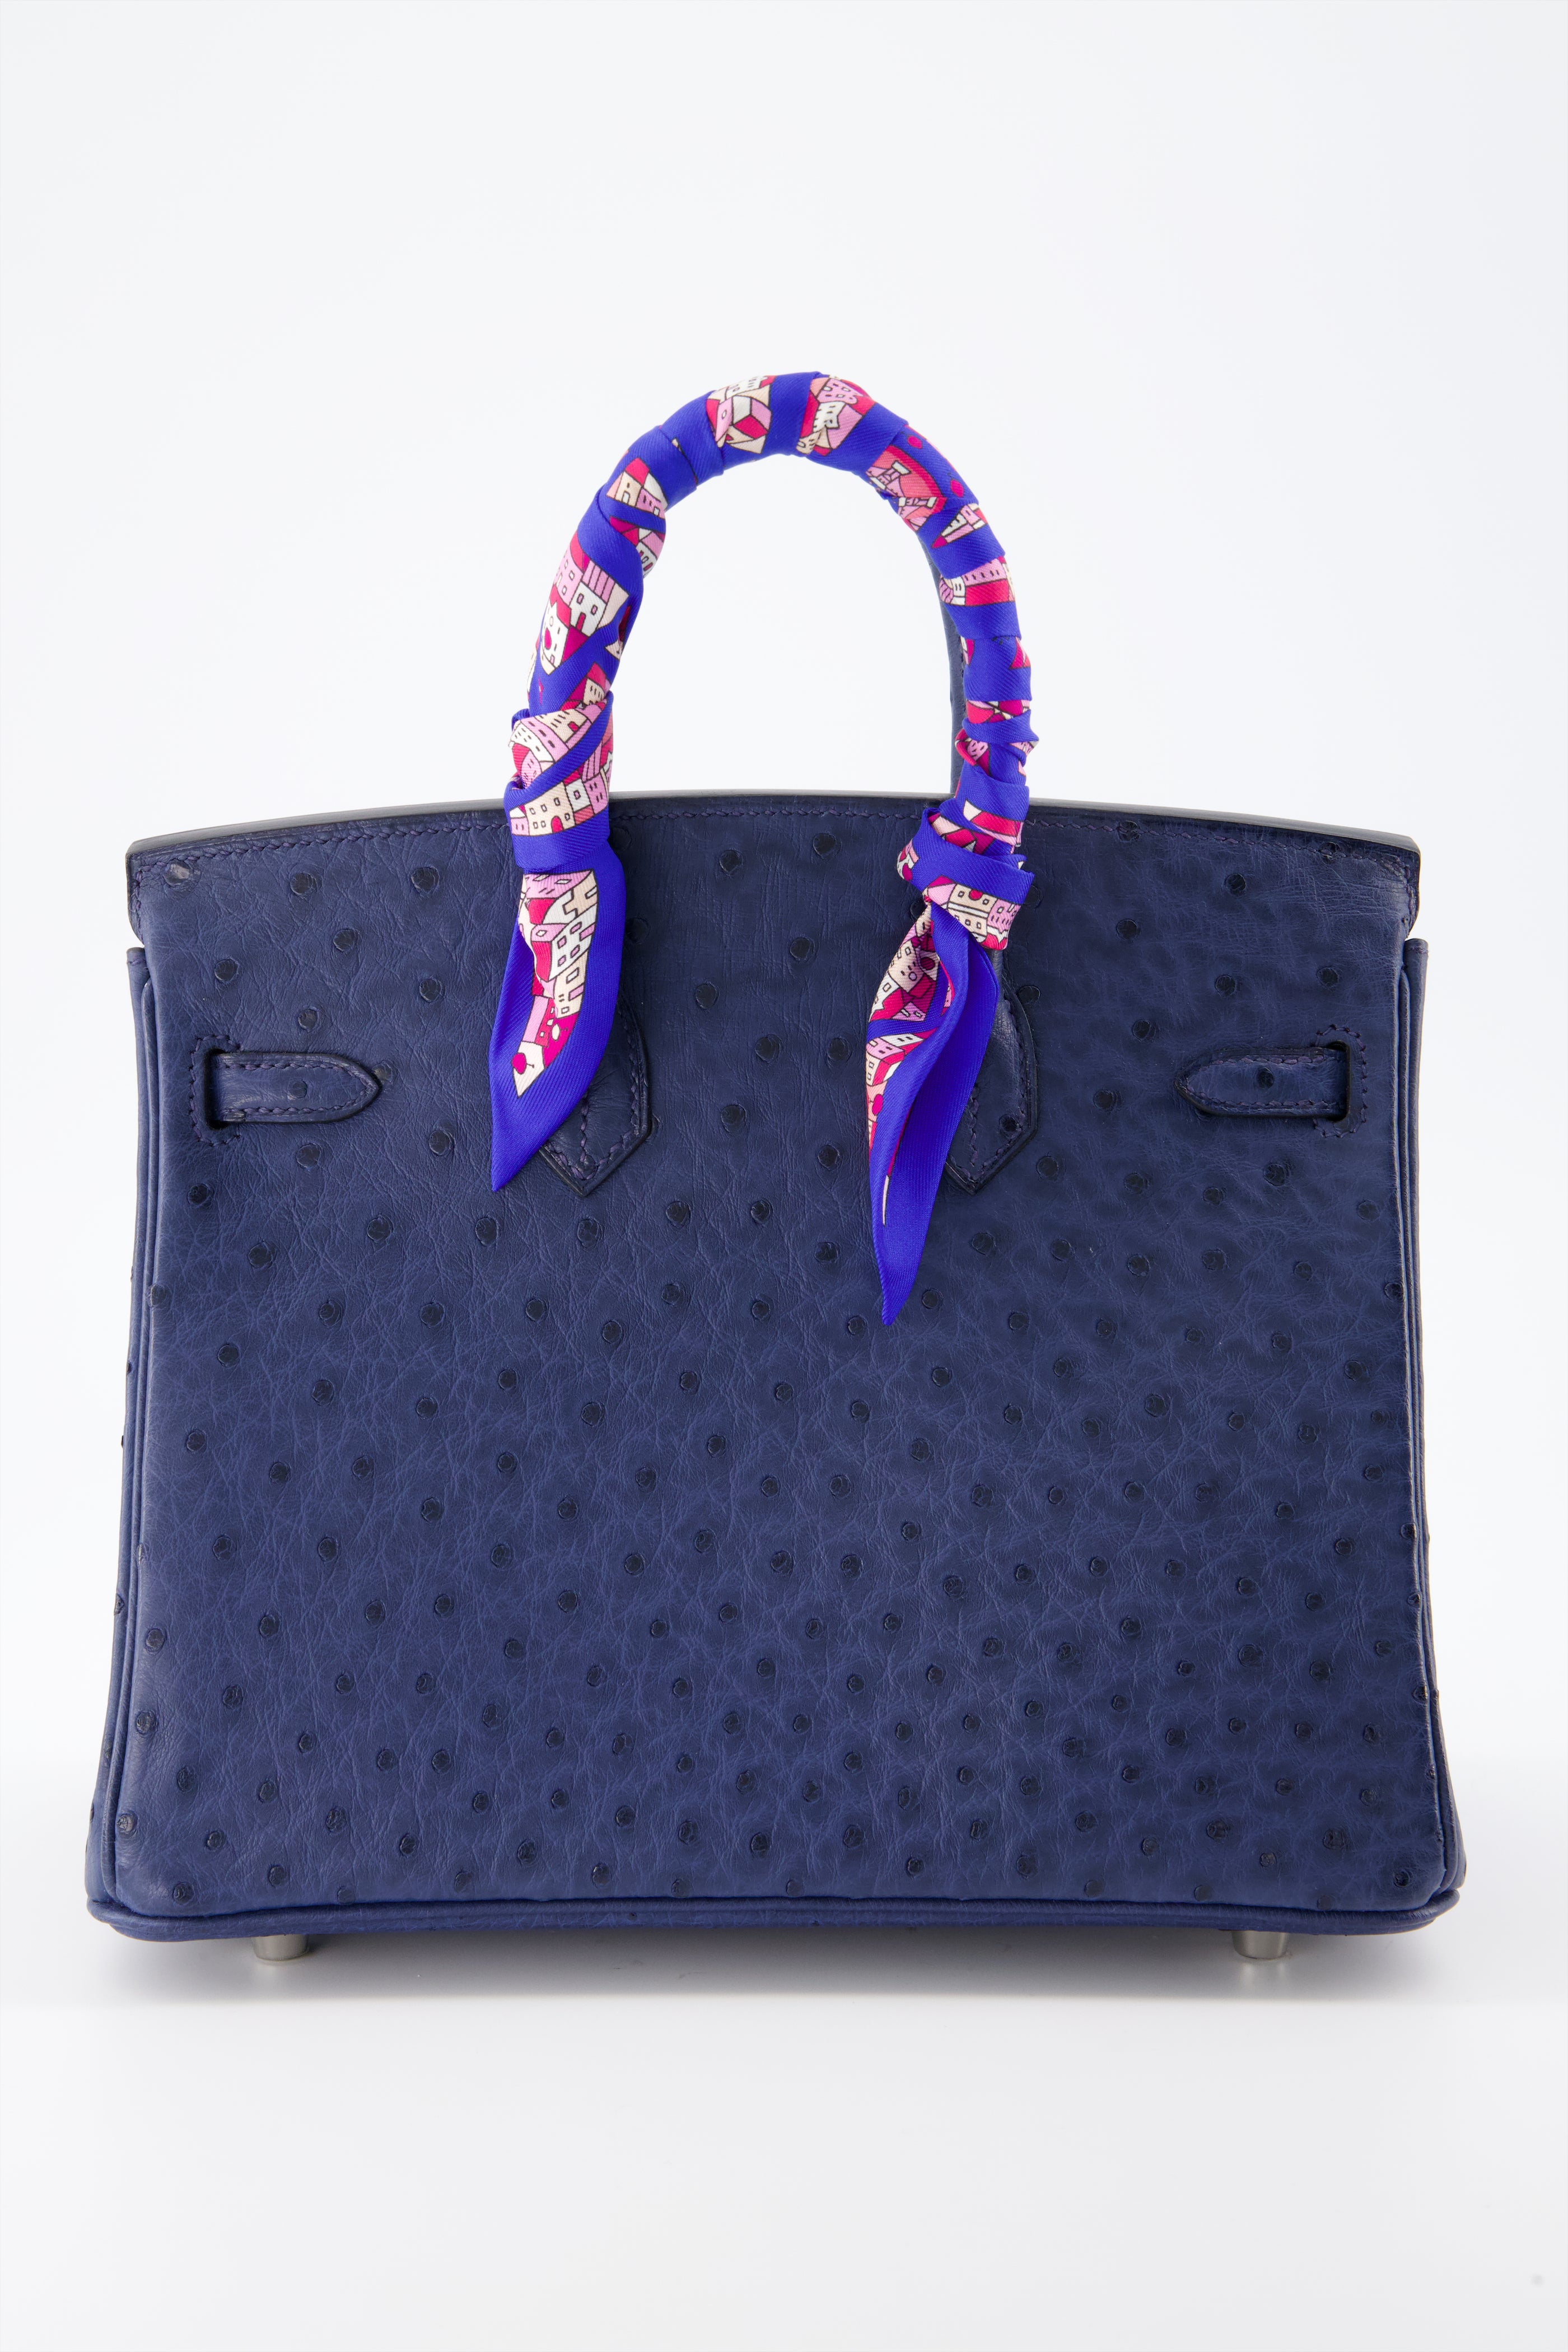 Hermes Birkin 25 Blue de Malte Handbag